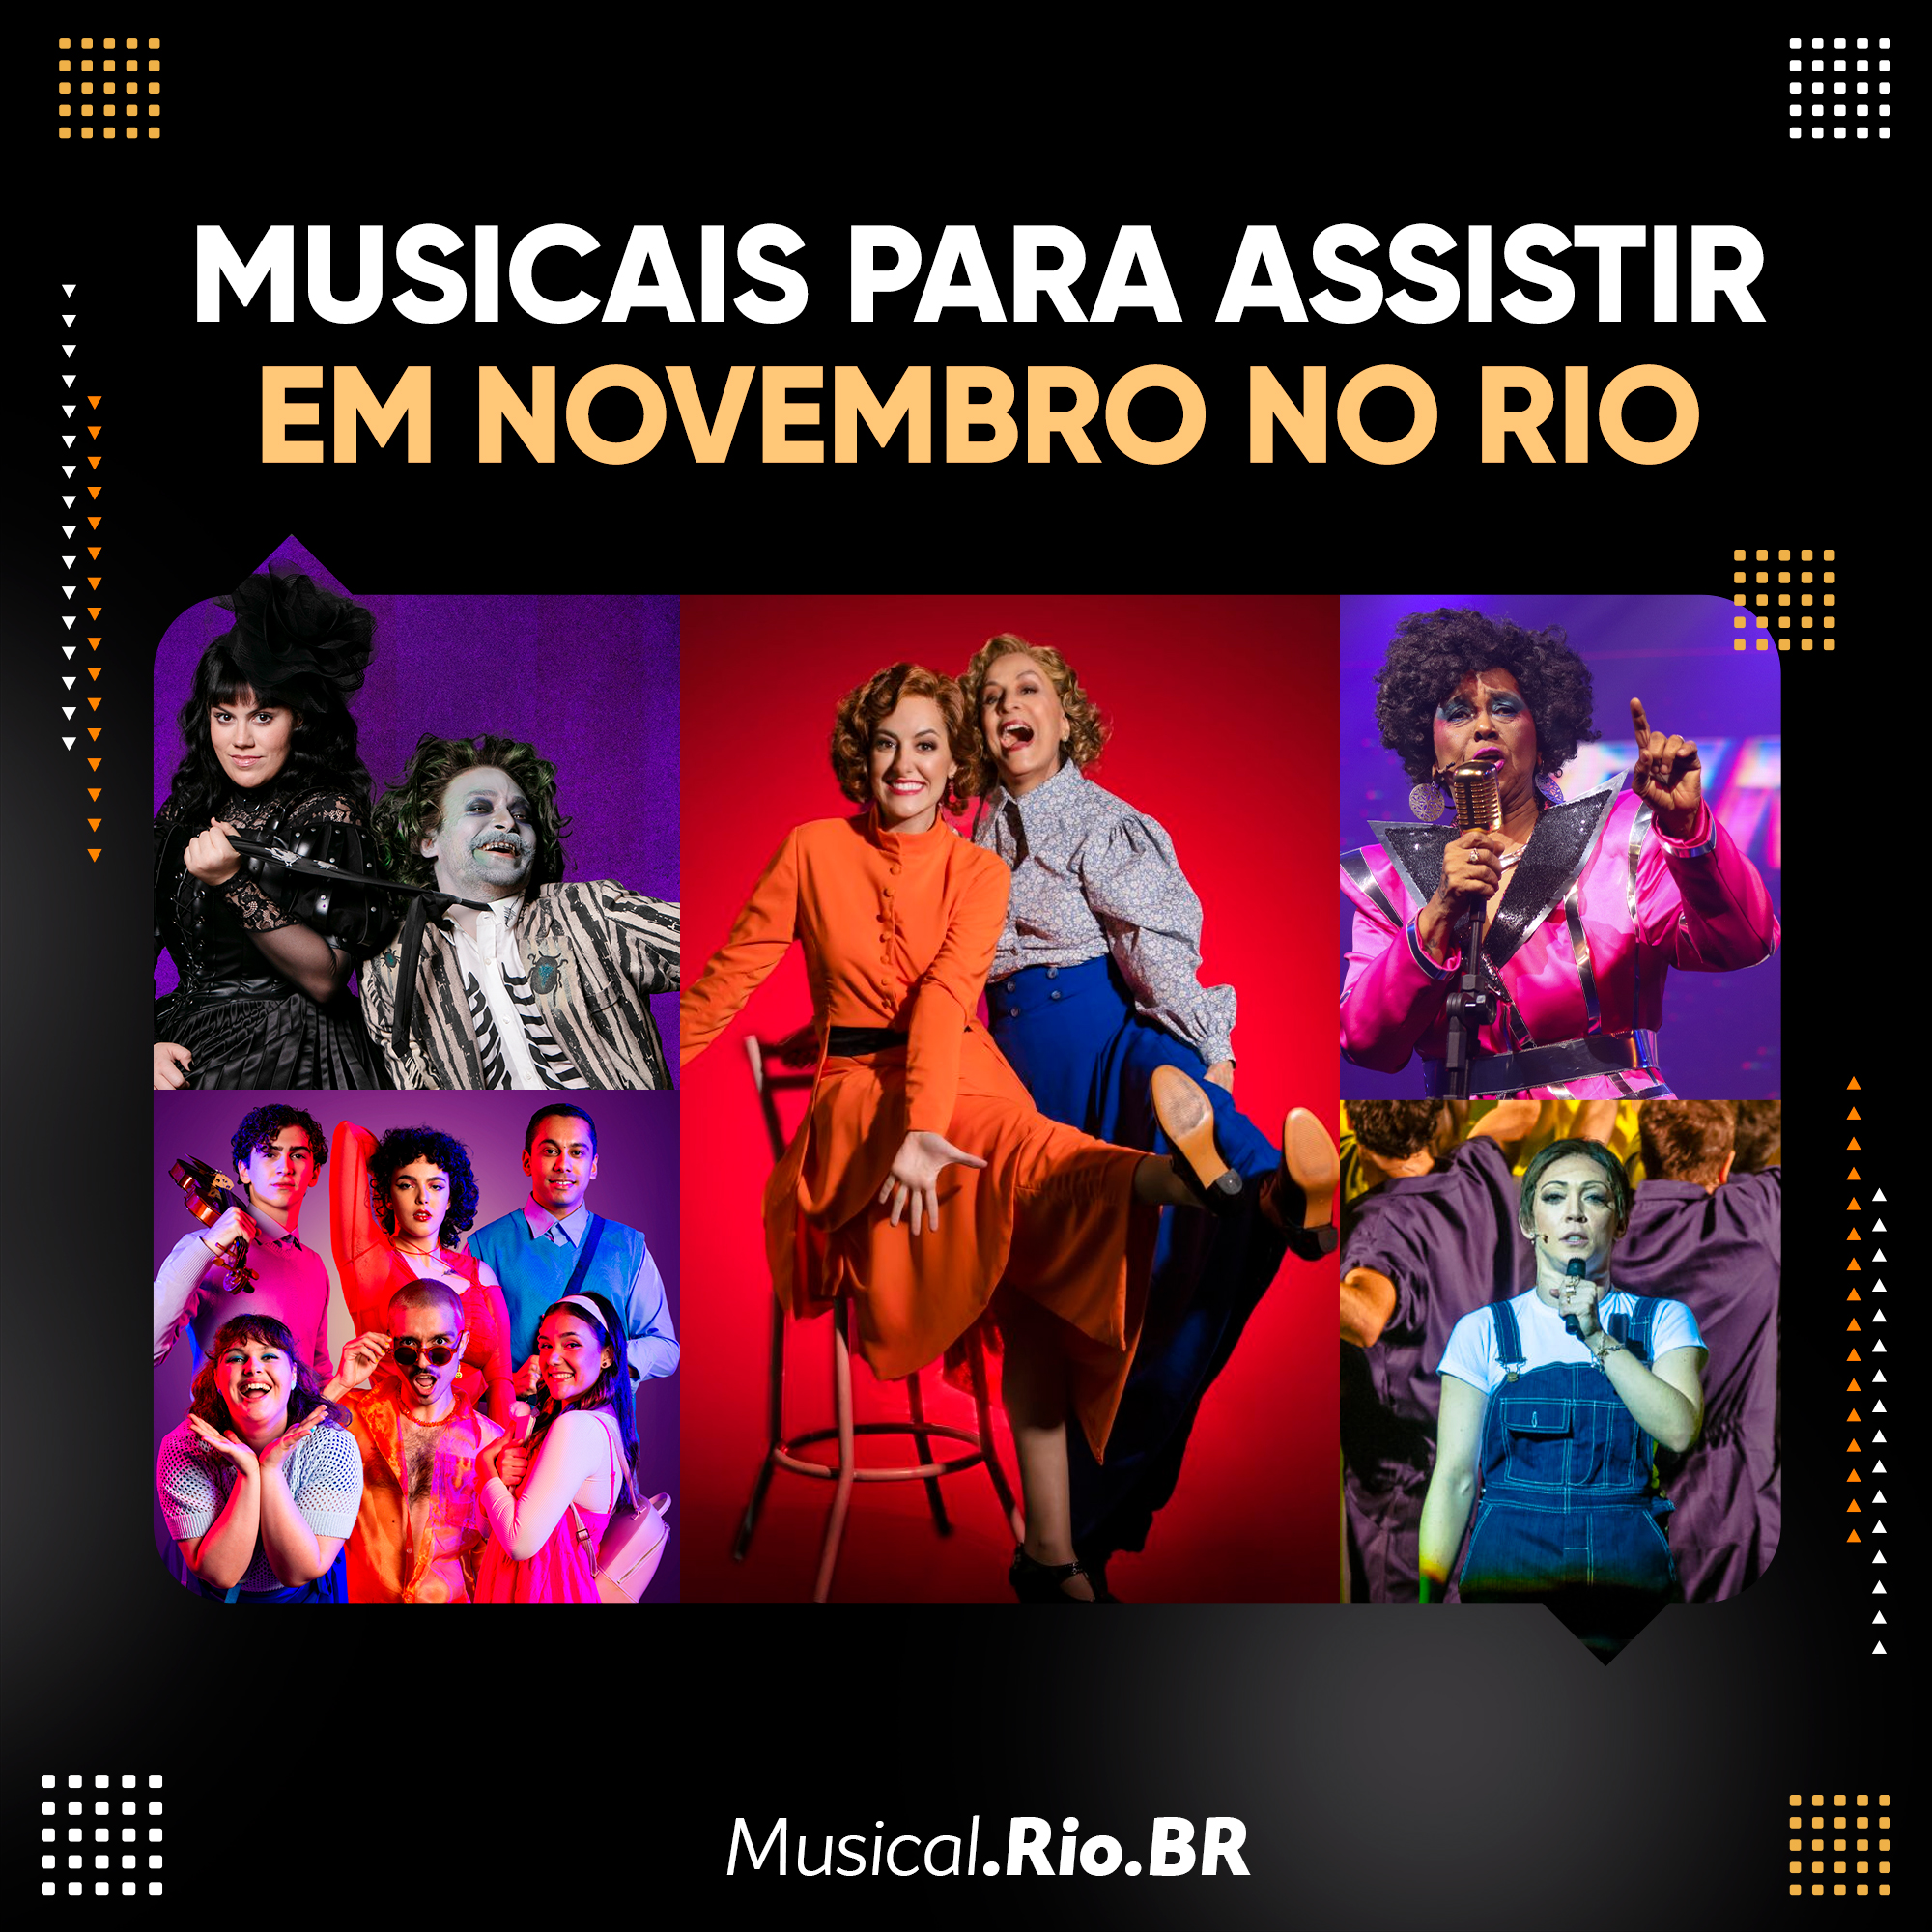 FENÔMENO MUSICAL, 'MAMMA MIA!' CHEGA A SÃO PAULO EM VERSÃO BRASILEIRA  INÉDITA DA DUPLA CHARLES MÖELLER & CLAUDIO BOTELHO - Musical.Rio